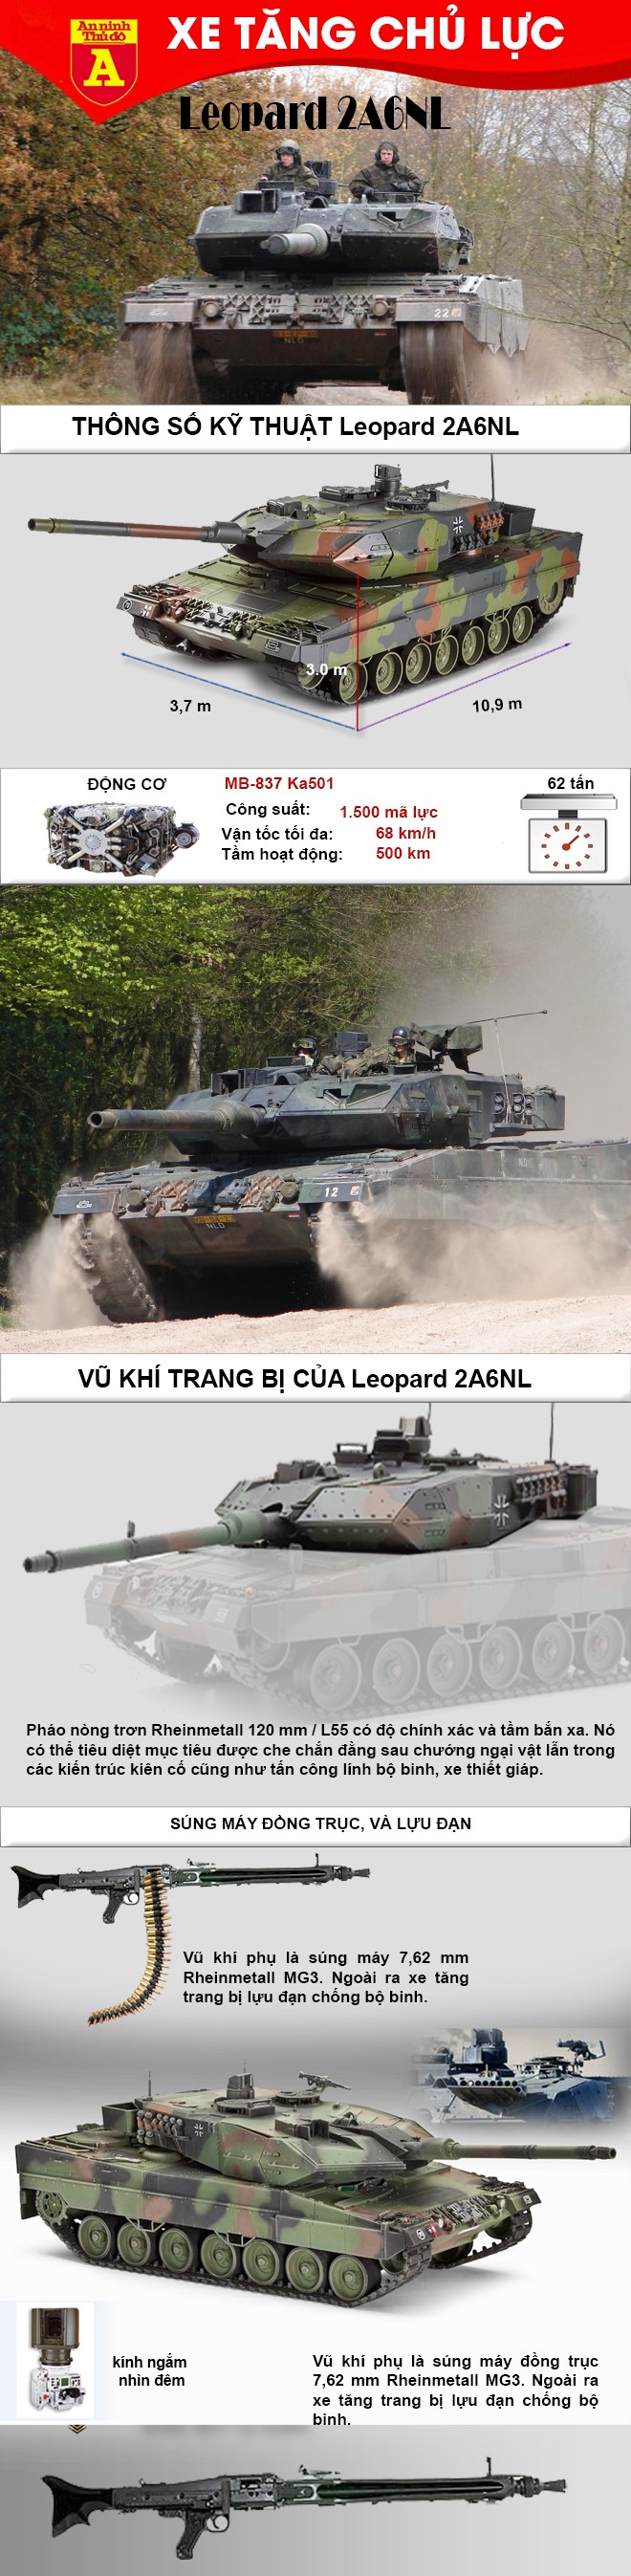 [Infographic] Đây là lý do tại sao xe tăng Leopard 2A6 Đức đè bẹp T-90 của Nga ảnh 2